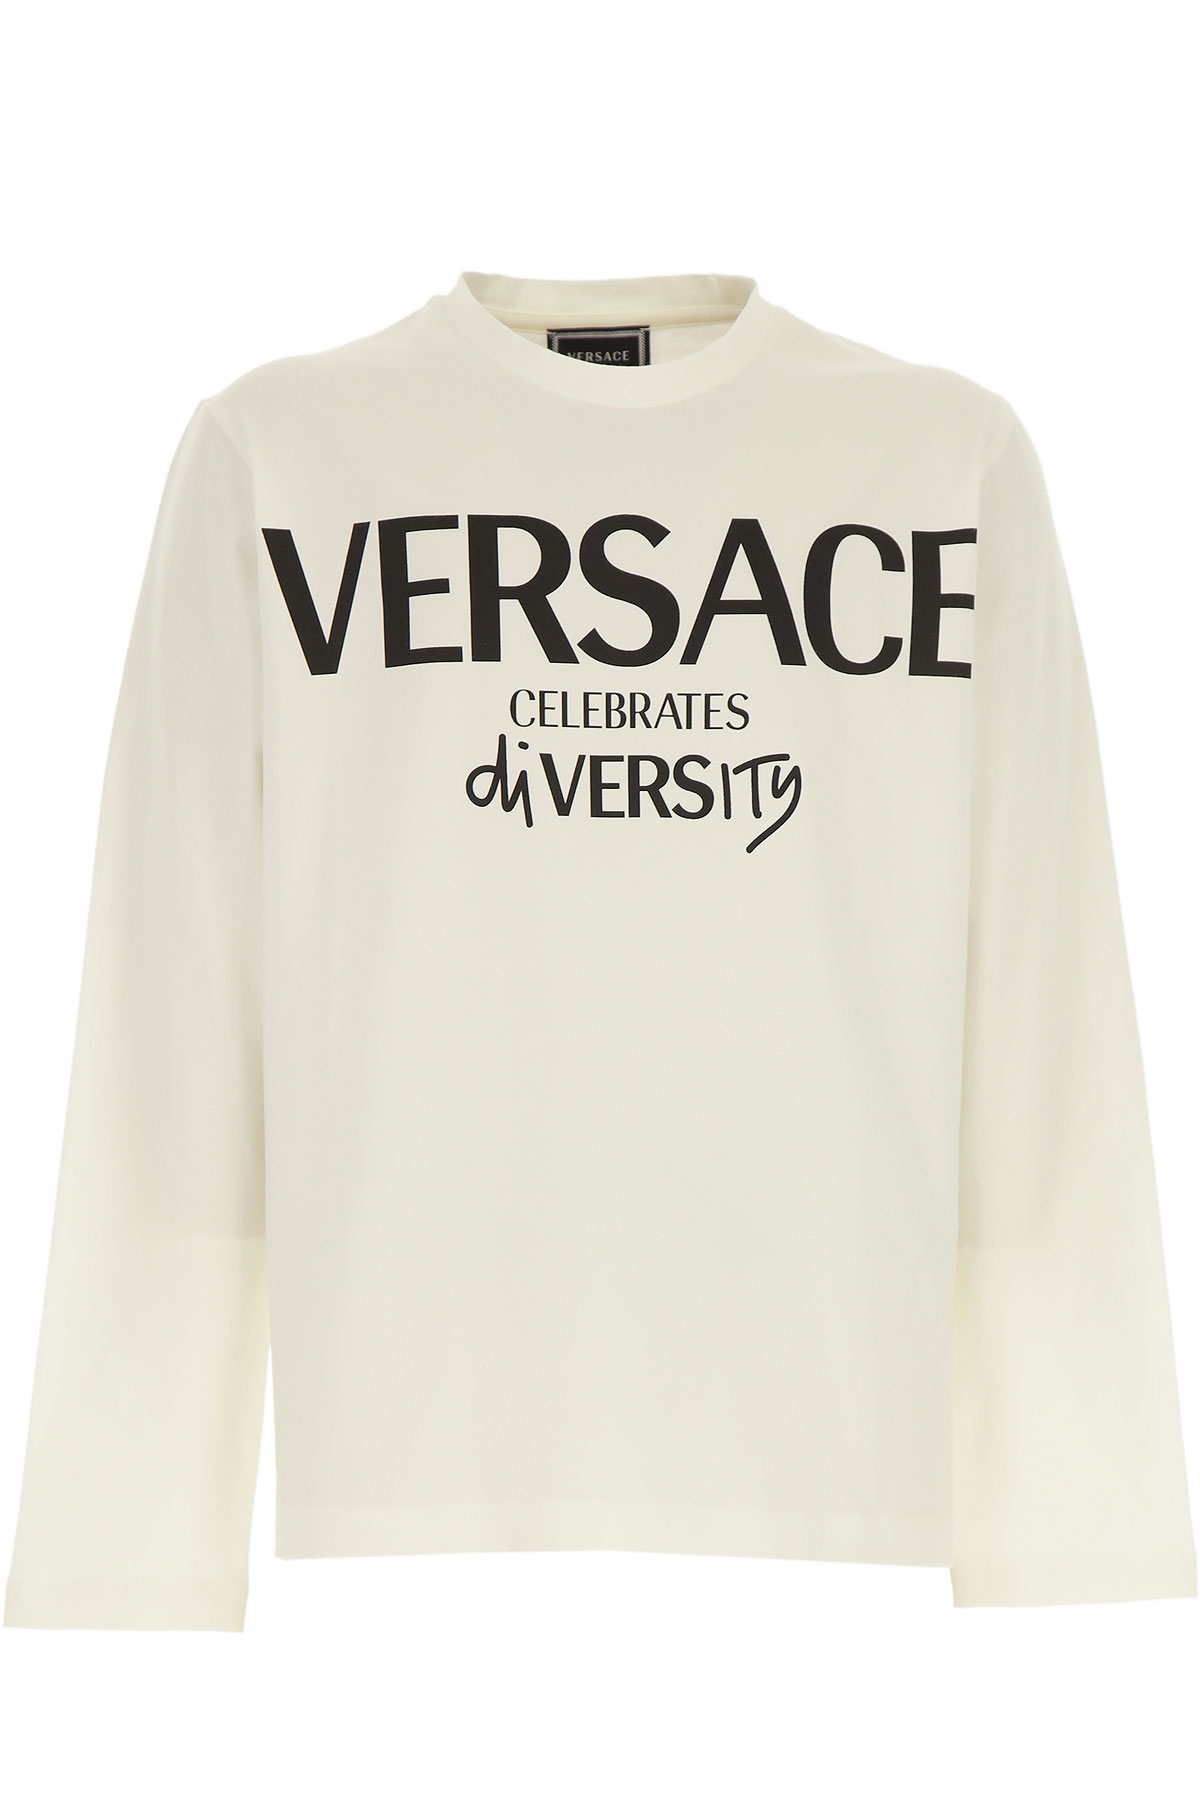 Versace Kinder T-Shirt für Jungen Günstig im Sale, Weiss, Baumwolle, 2017, 10Y 12Y 14Y 8Y